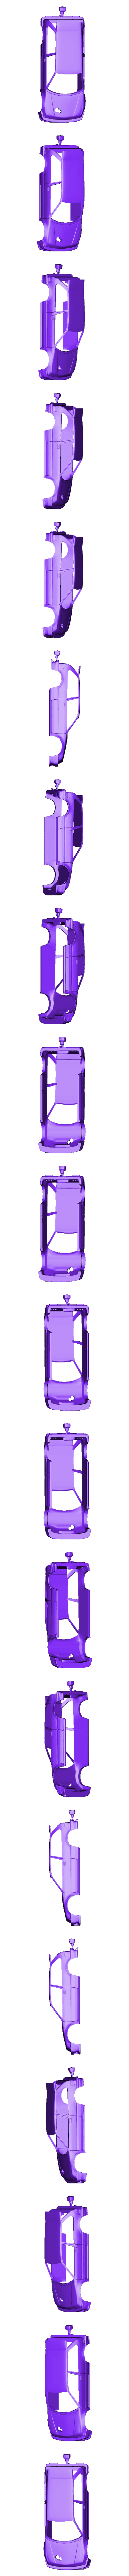 Drag EF.stl Download STL file HONDA CIVIC EF TURBO - Drag car body • 3D printable model, ditomaso147